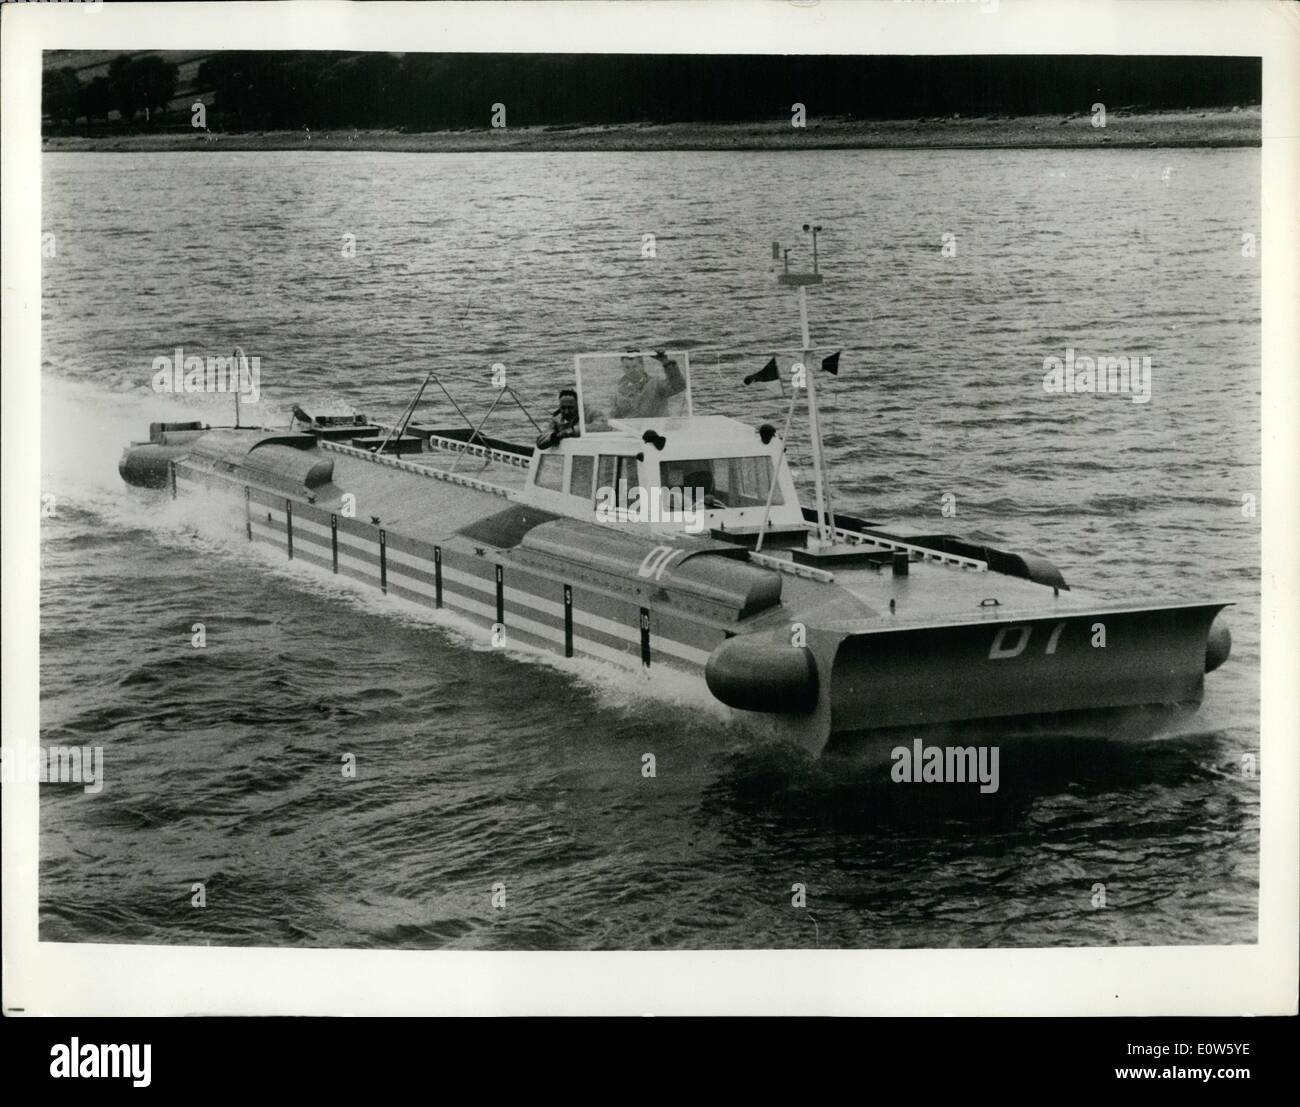 : 7. Juli 1961 - Schiff in der Erprobung auf Gare Loch, Schottland, ist die D1, ein 60 Fuß, experimentellen Prototyp '' schweben Schiff ''. 4 1/2 Tonnen wiegen, es hat zwei drei-Zylinder zwei Zyklus 25 b.h.p.-Motoren, die unten aus dem Wasser heben, während seine Seitenwände untergetaucht zu ungefähr sechs Zoll bleiben. Zwei 35 b.h.p. Außenbordmotoren mit variabler Steigung Propeller Schlitten '''' es über das Wasser. Seine britischen Erbauer hoffen auf eine Personenbeförderung Version in Betrieb bis Ende des nächsten Jahres. Stockfoto